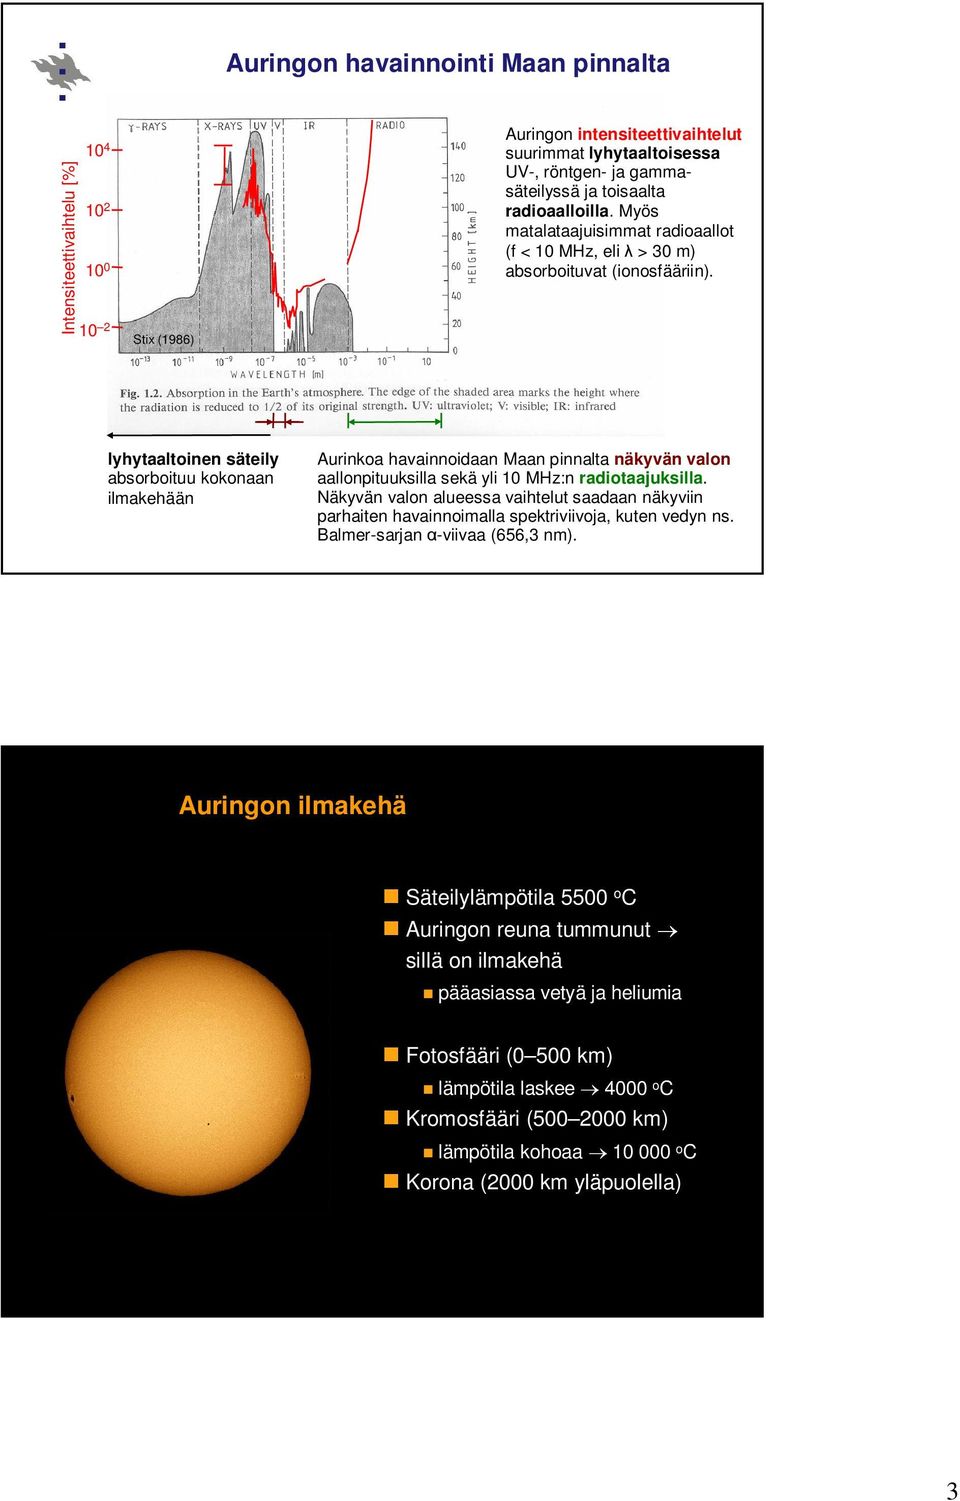 lyhytaaltoinen säteily absorboituu kokonaan ilmakehään Aurinkoa havainnoidaan Maan pinnalta näkyvän valon aallonpituuksilla sekä yli 10 MHz:n radiotaajuksilla.